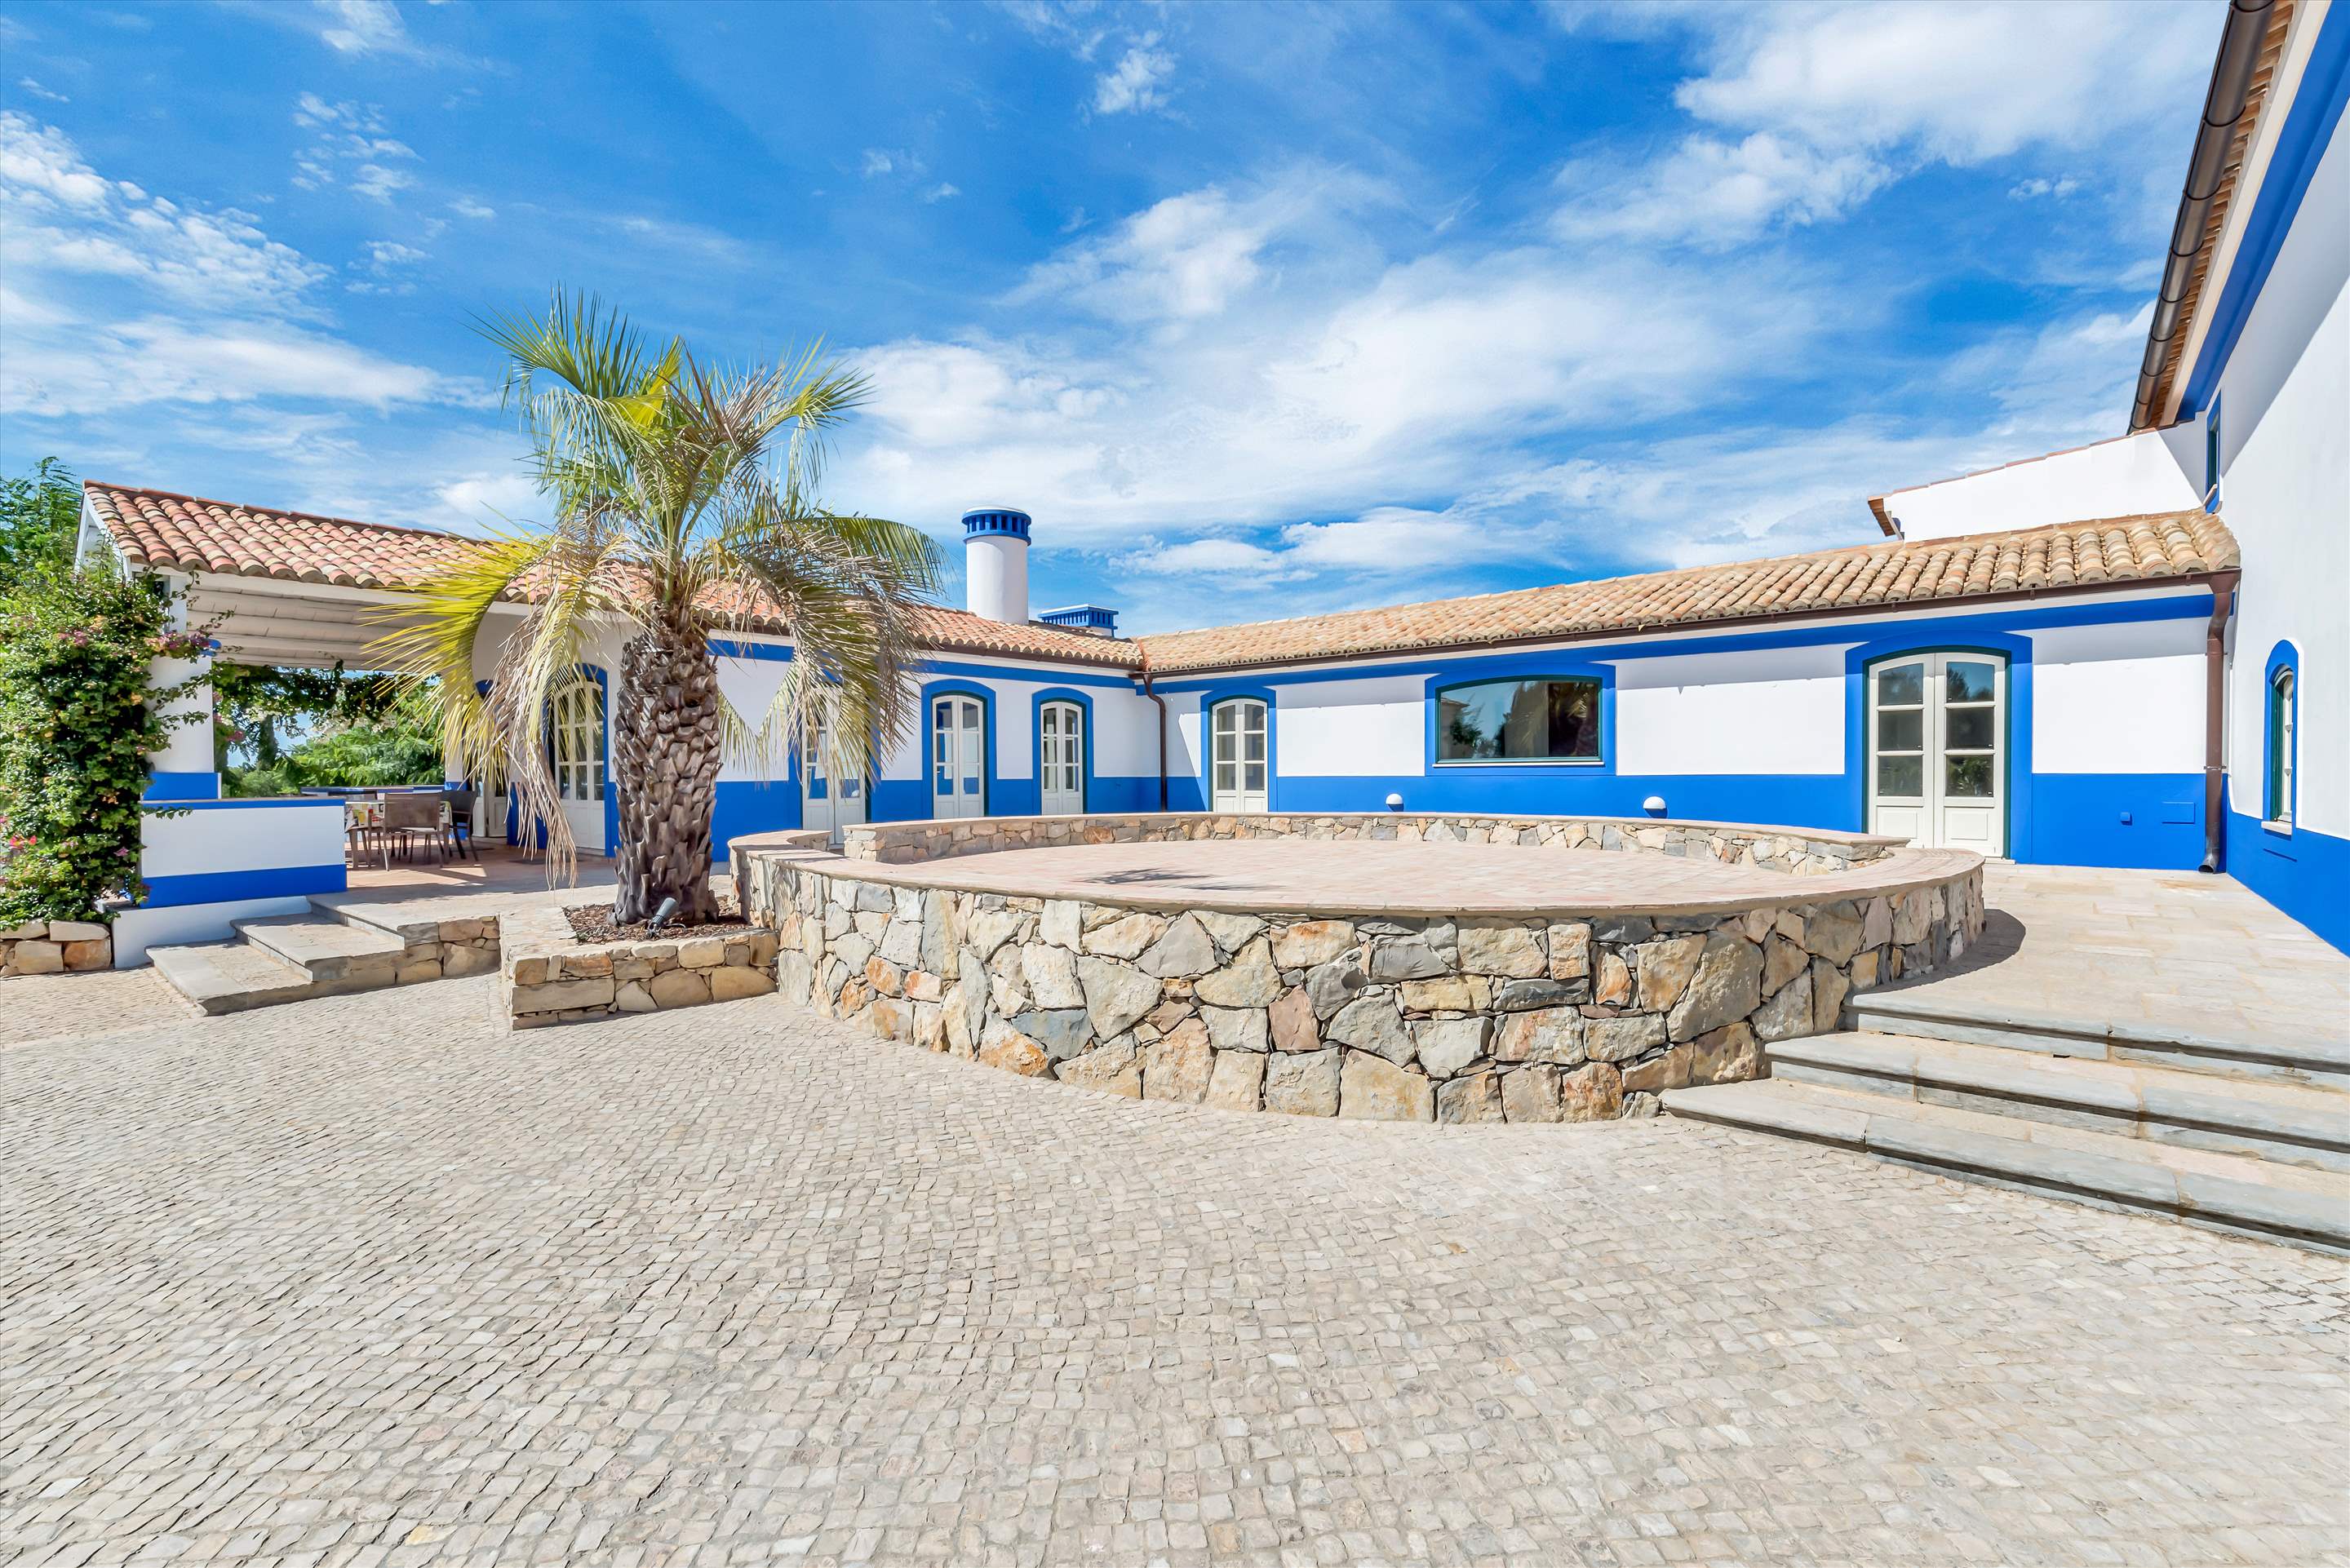 Casa Alemao, Main House, 5 Bedrooms, 5 bedroom villa in Vilamoura Area, Algarve Photo #5